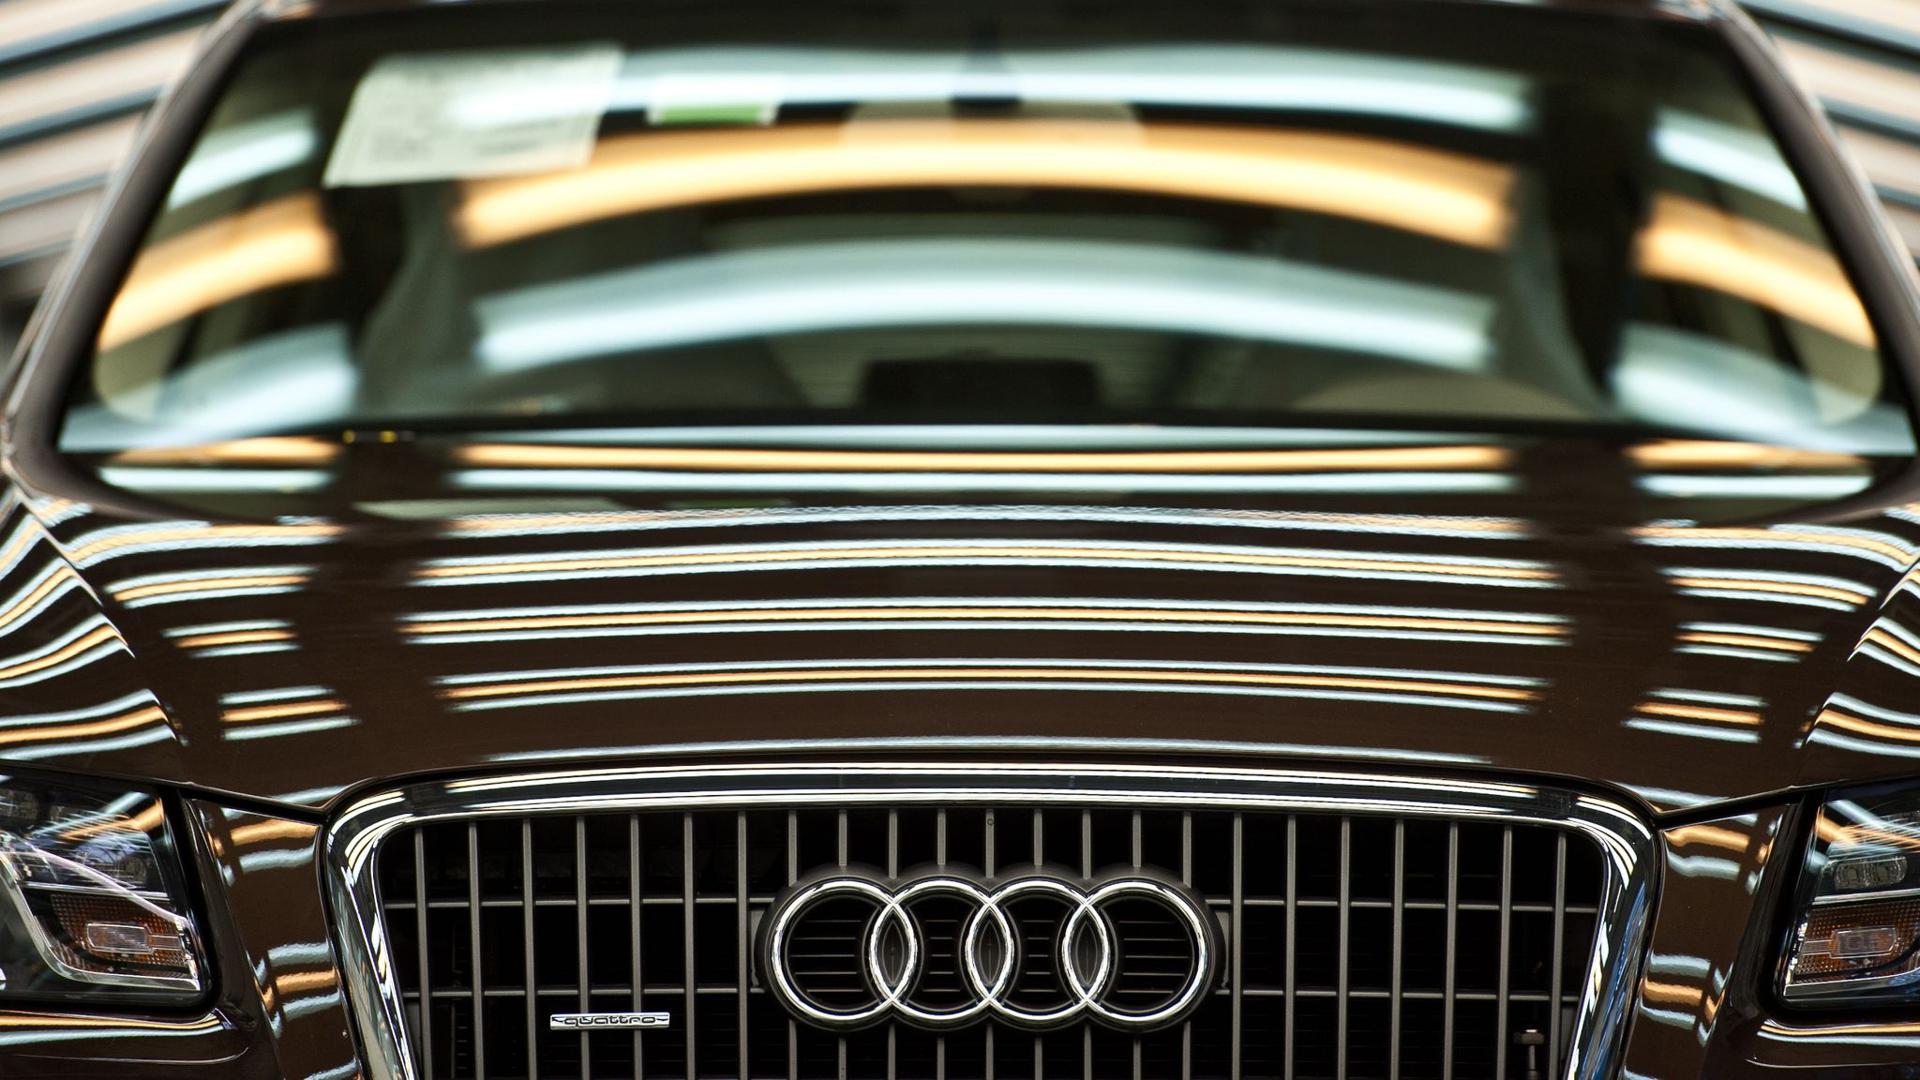 Ein Audi Q5 steht in der Produktion.